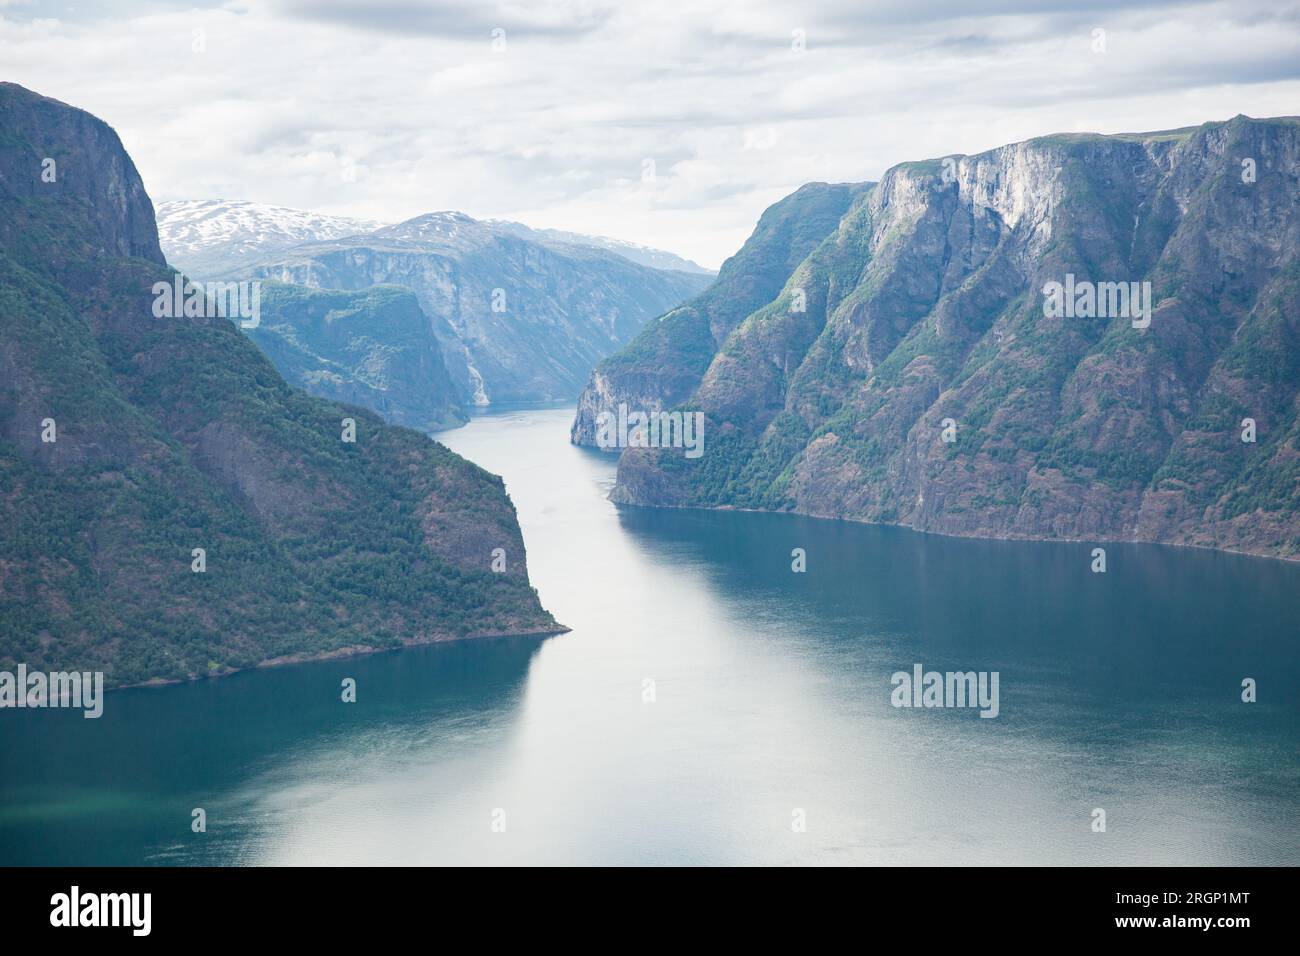 Aurlandsfjord fjord amazing landscape, Norway Scandinavia. National tourist route Aurlandsfjellet Stock Photo